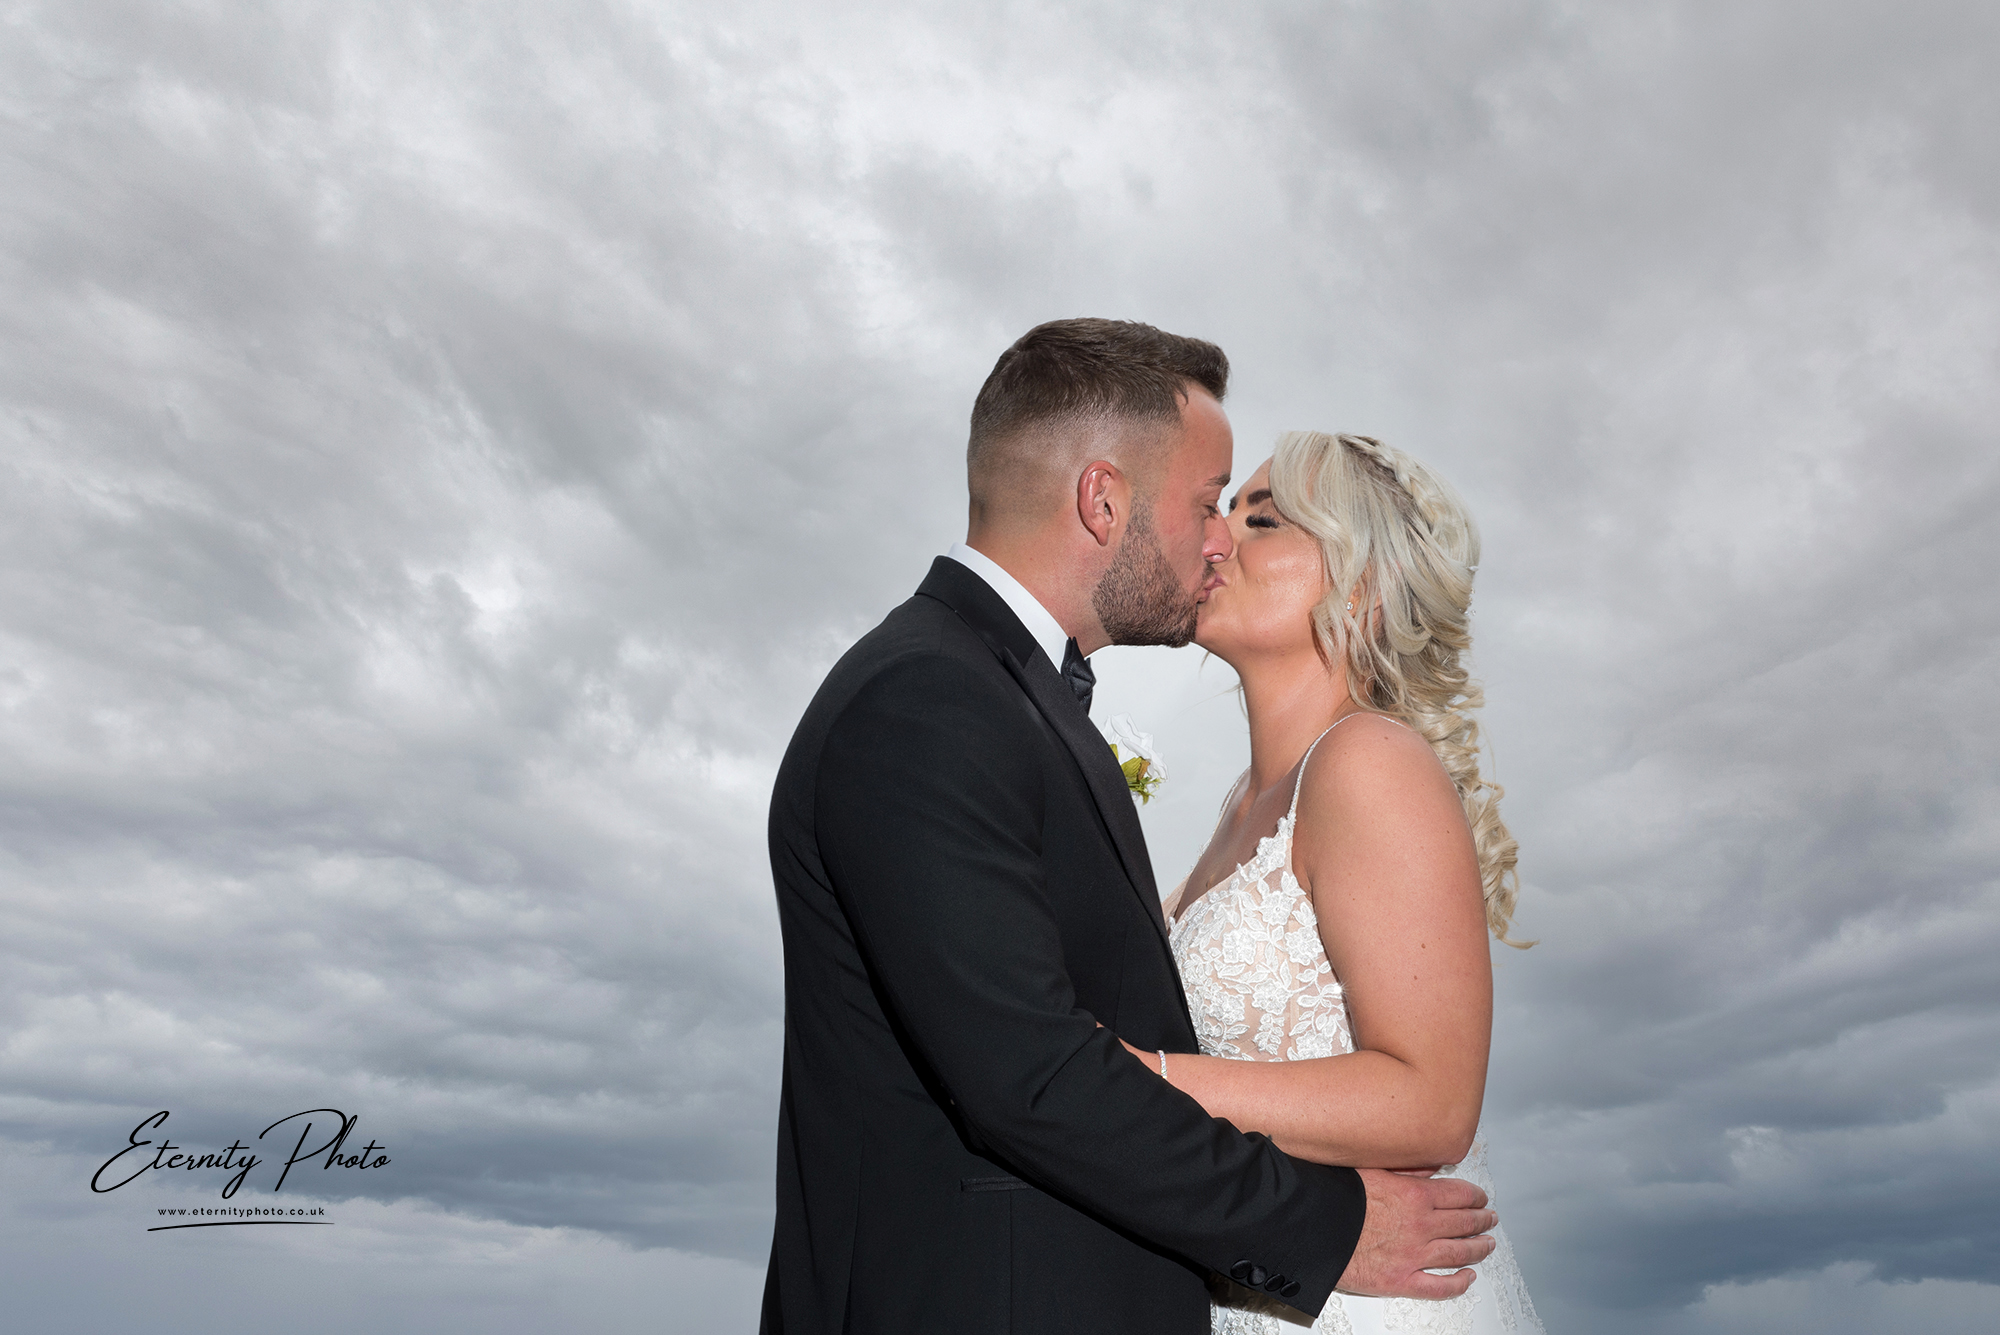 Bride and groom kissing under stormy skies.